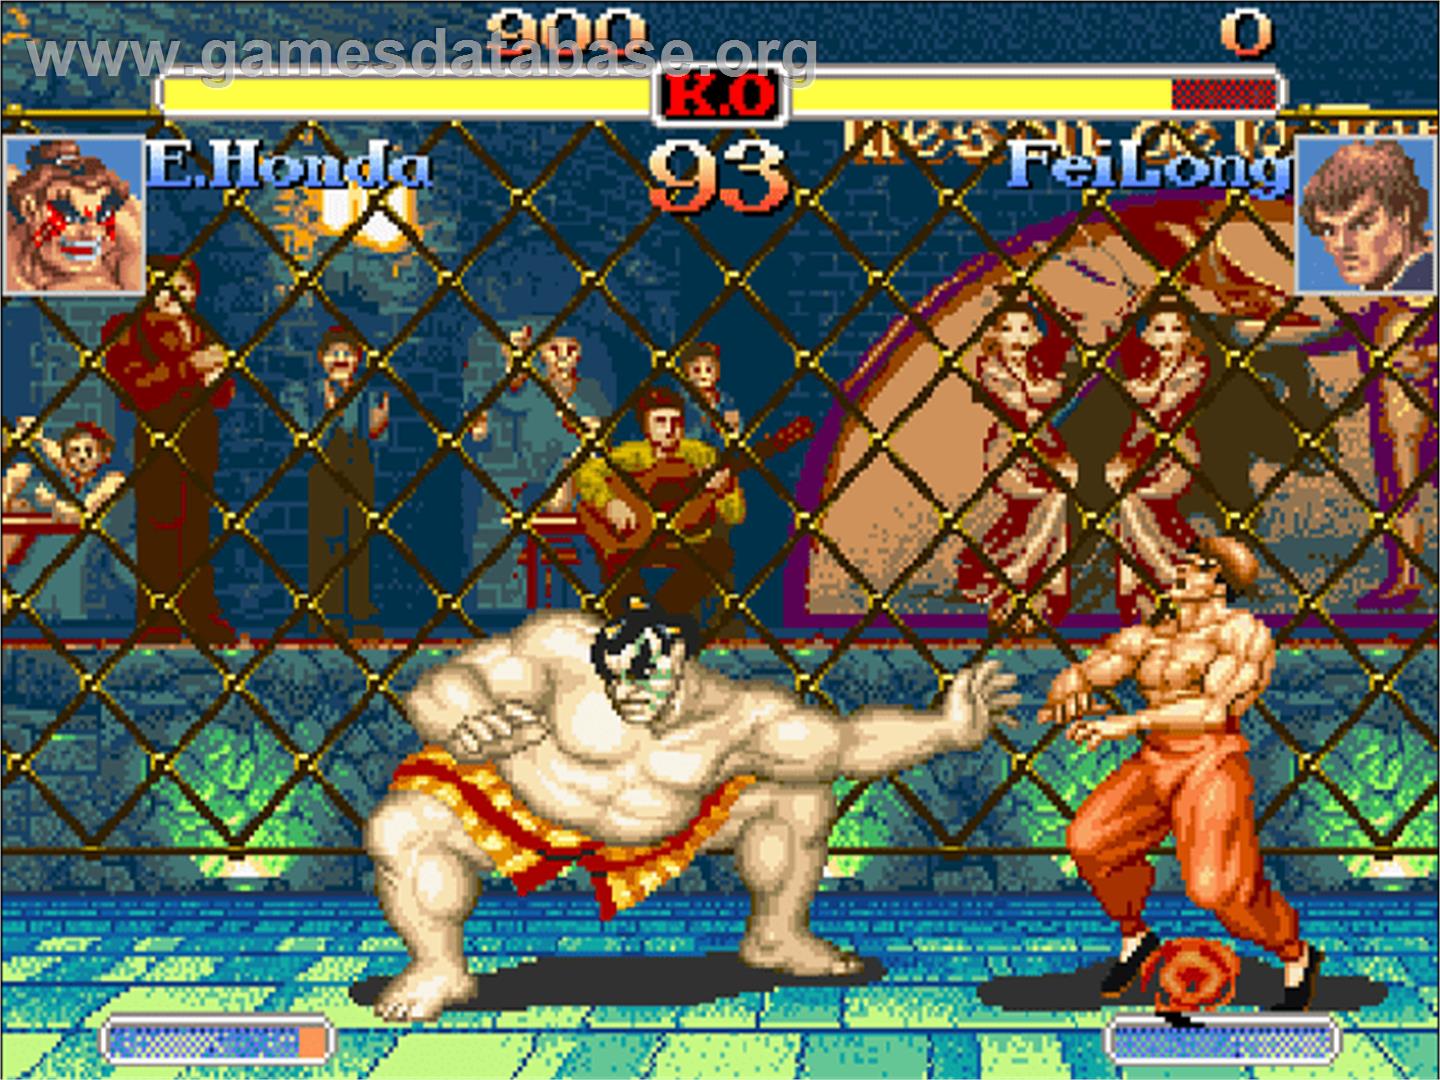 Super Street Fighter II Turbo - Commodore Amiga CD32 - Artwork - In Game